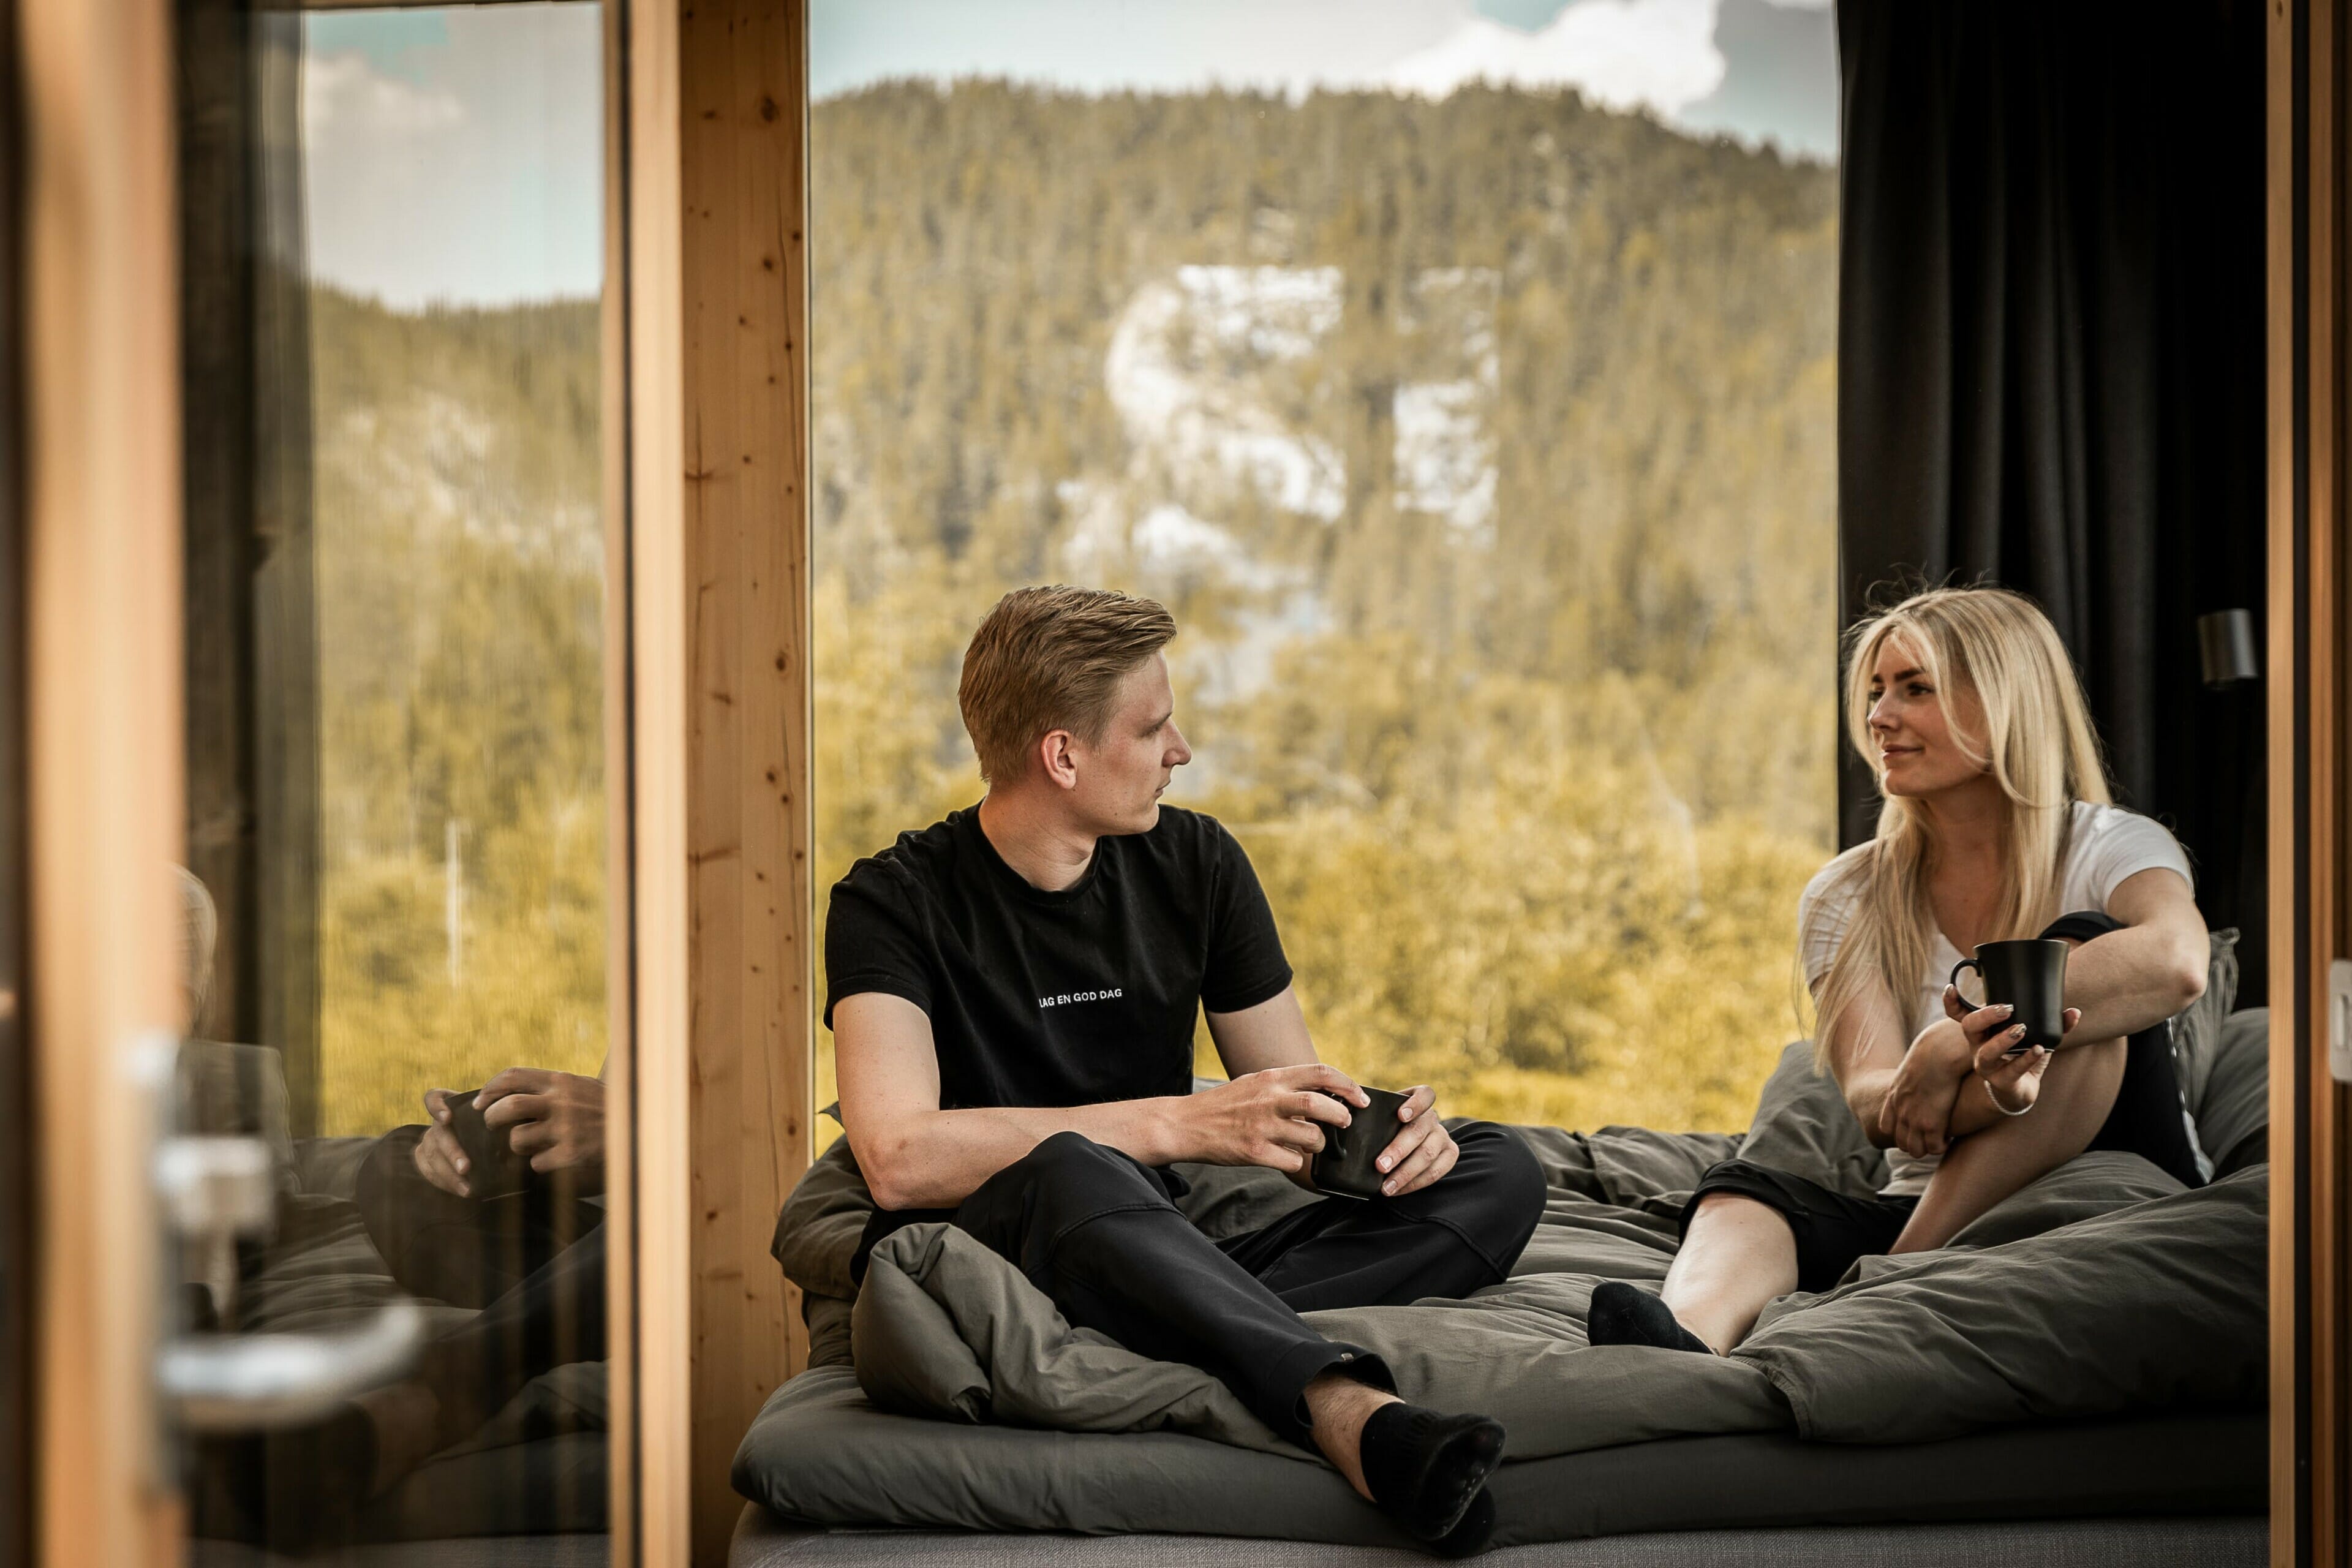 Et par sitte i senga og drikker kaffe, med utsikt fra panoramavinduer i bakgrunnen.